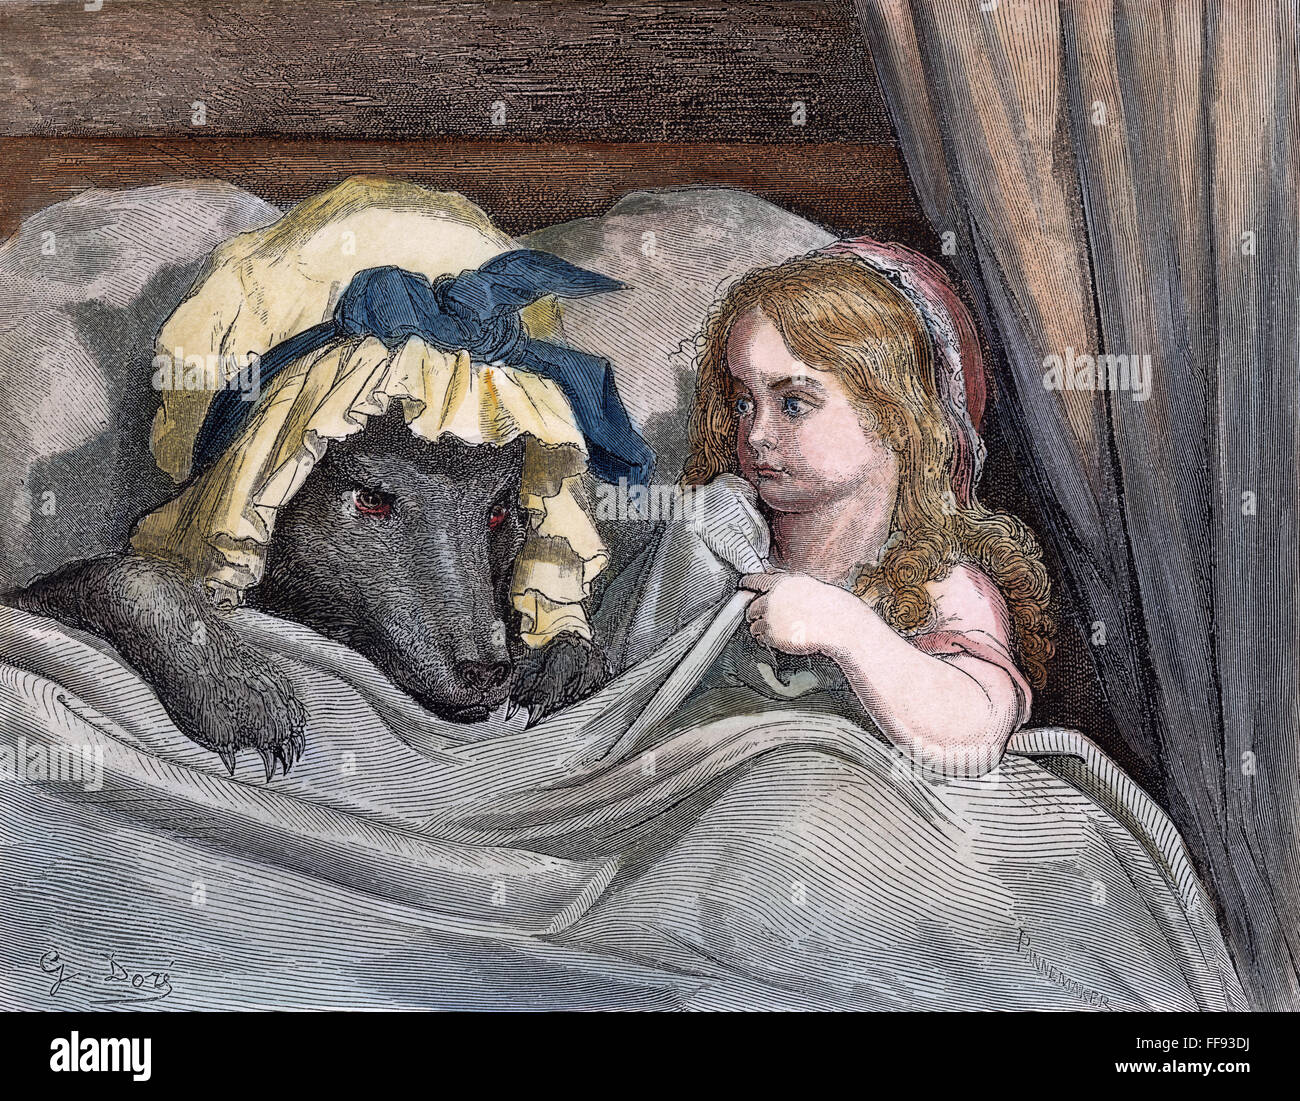 LITTLE RED RIDING HOOD. /nThe Wolf und Rotkäppchen. Kupferstich aus einer c1860 Edition von Perrault Märchen illustriert von Gustave DorΘ. Stockfoto